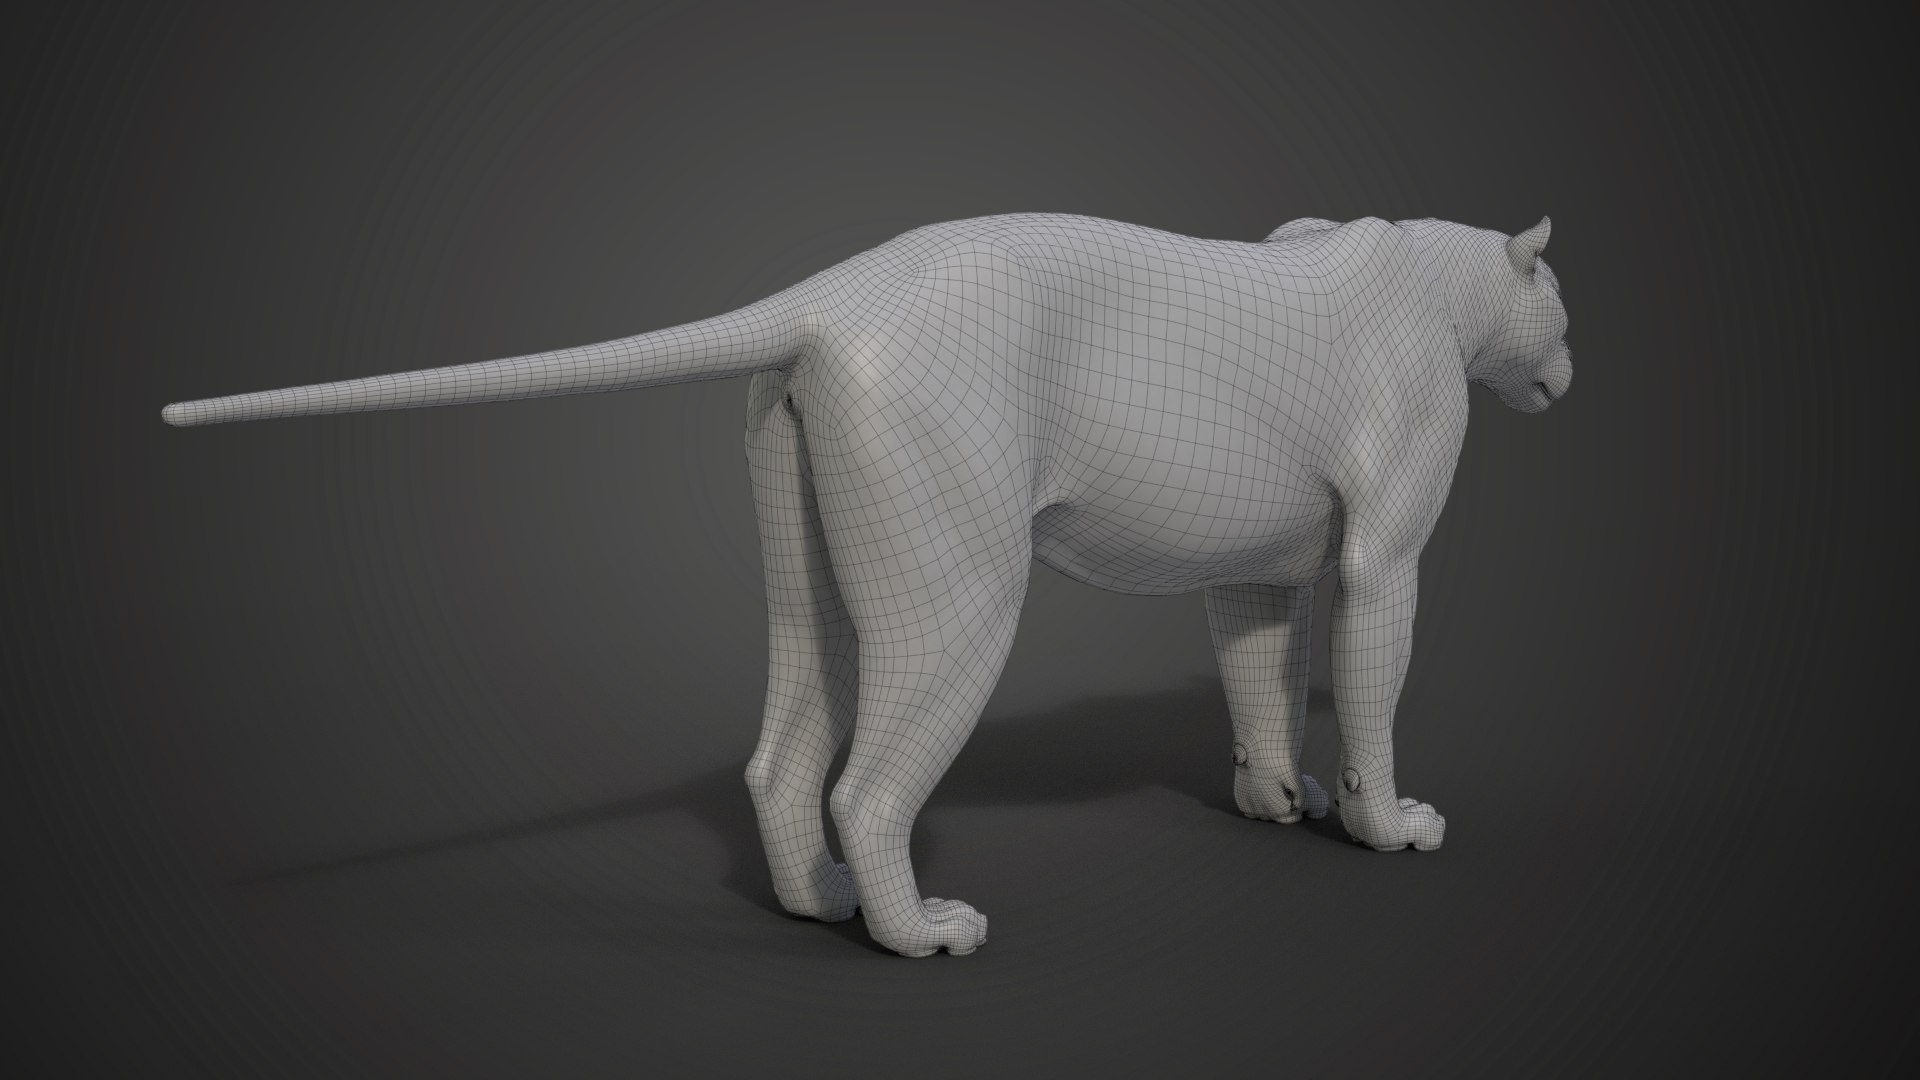 Siberian tiger - 3D model by Sarma (@mpotran) [7e49ec0]